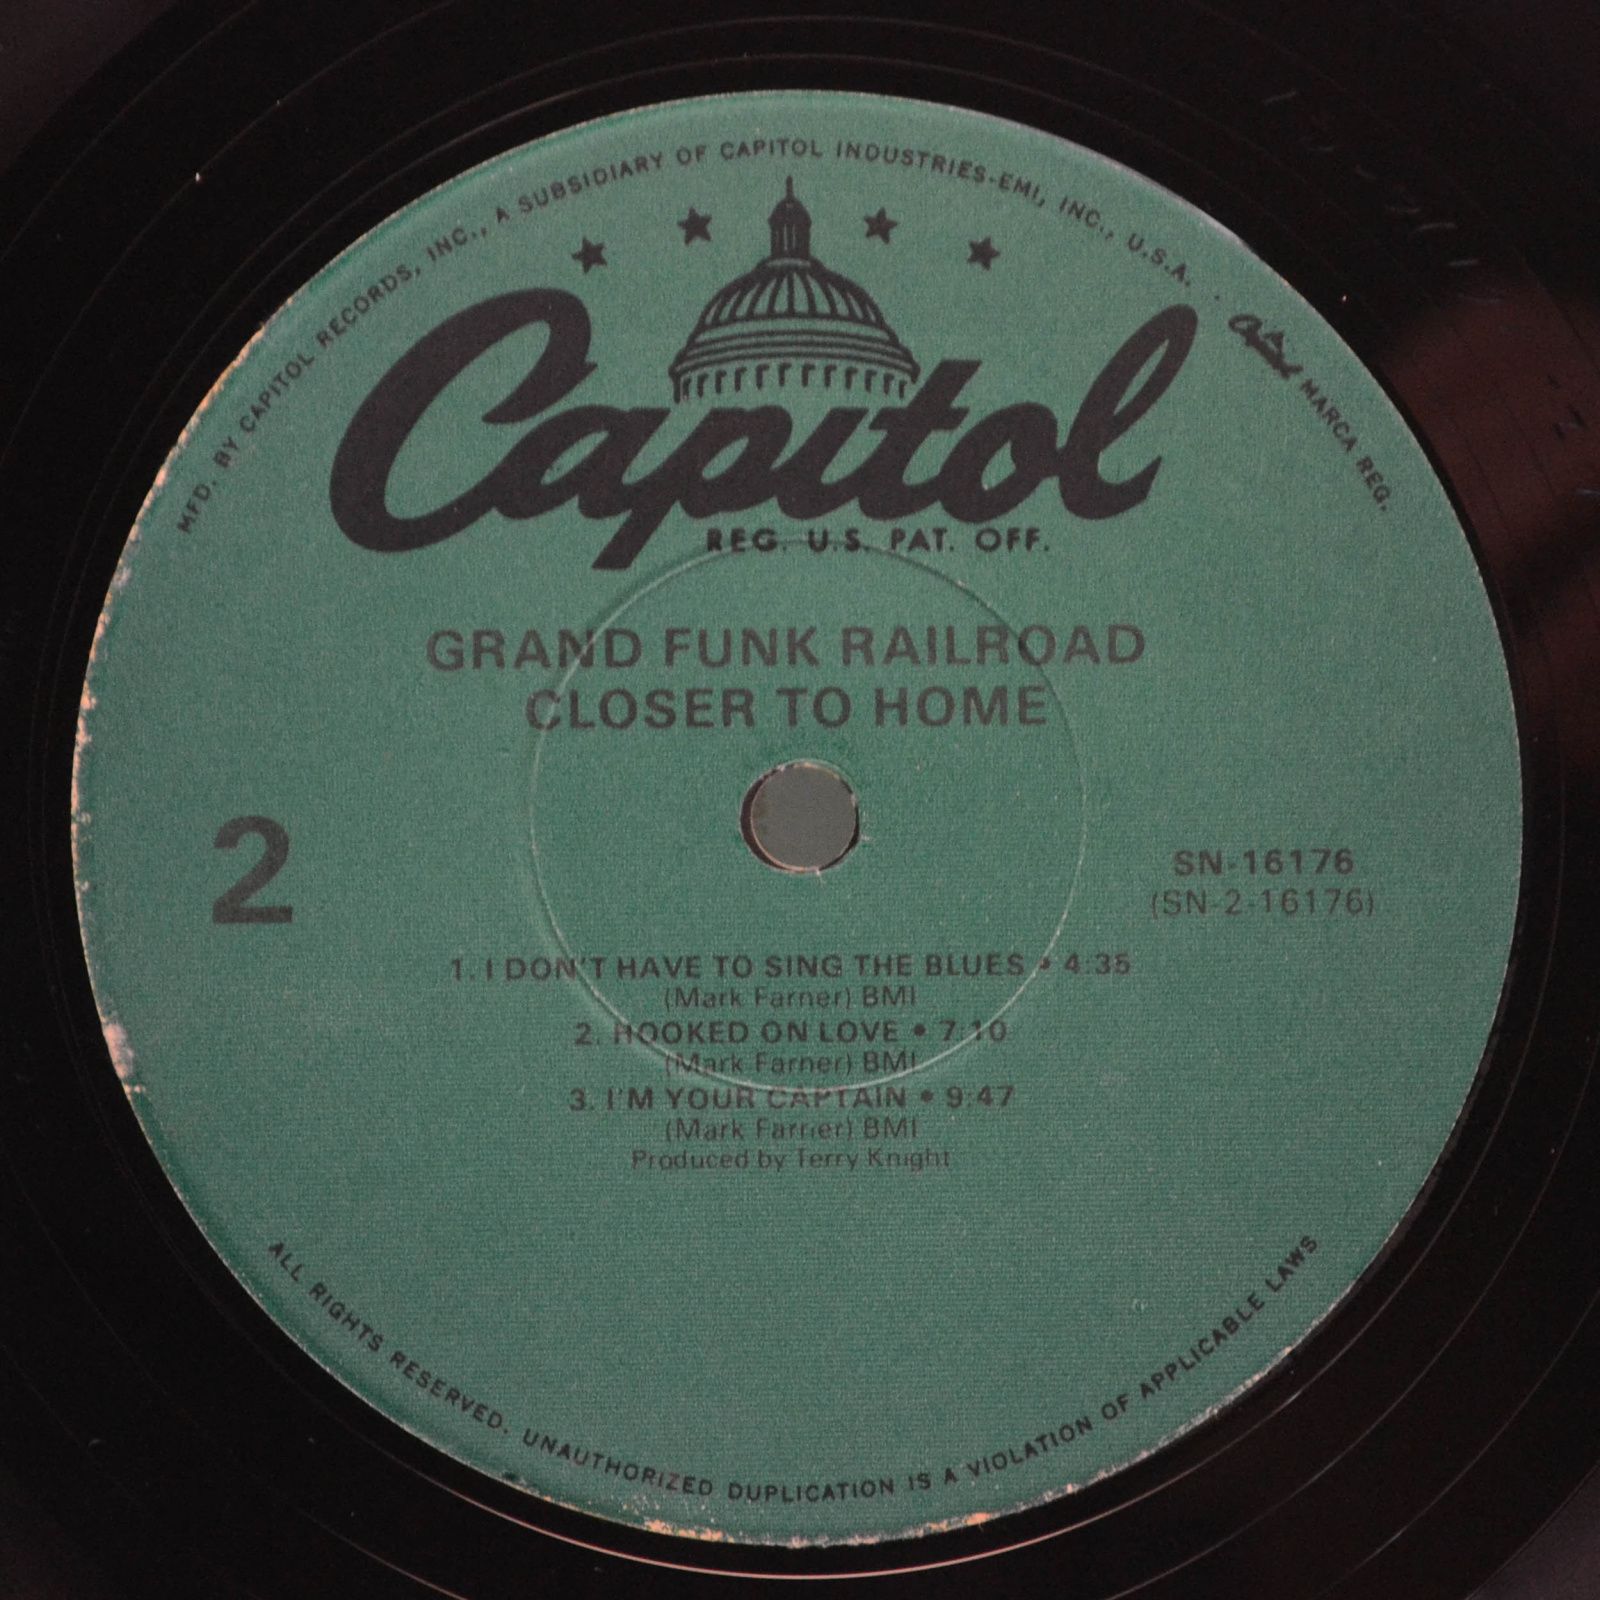 Grand Funk Railroad — Closer To Home (USA), 1970